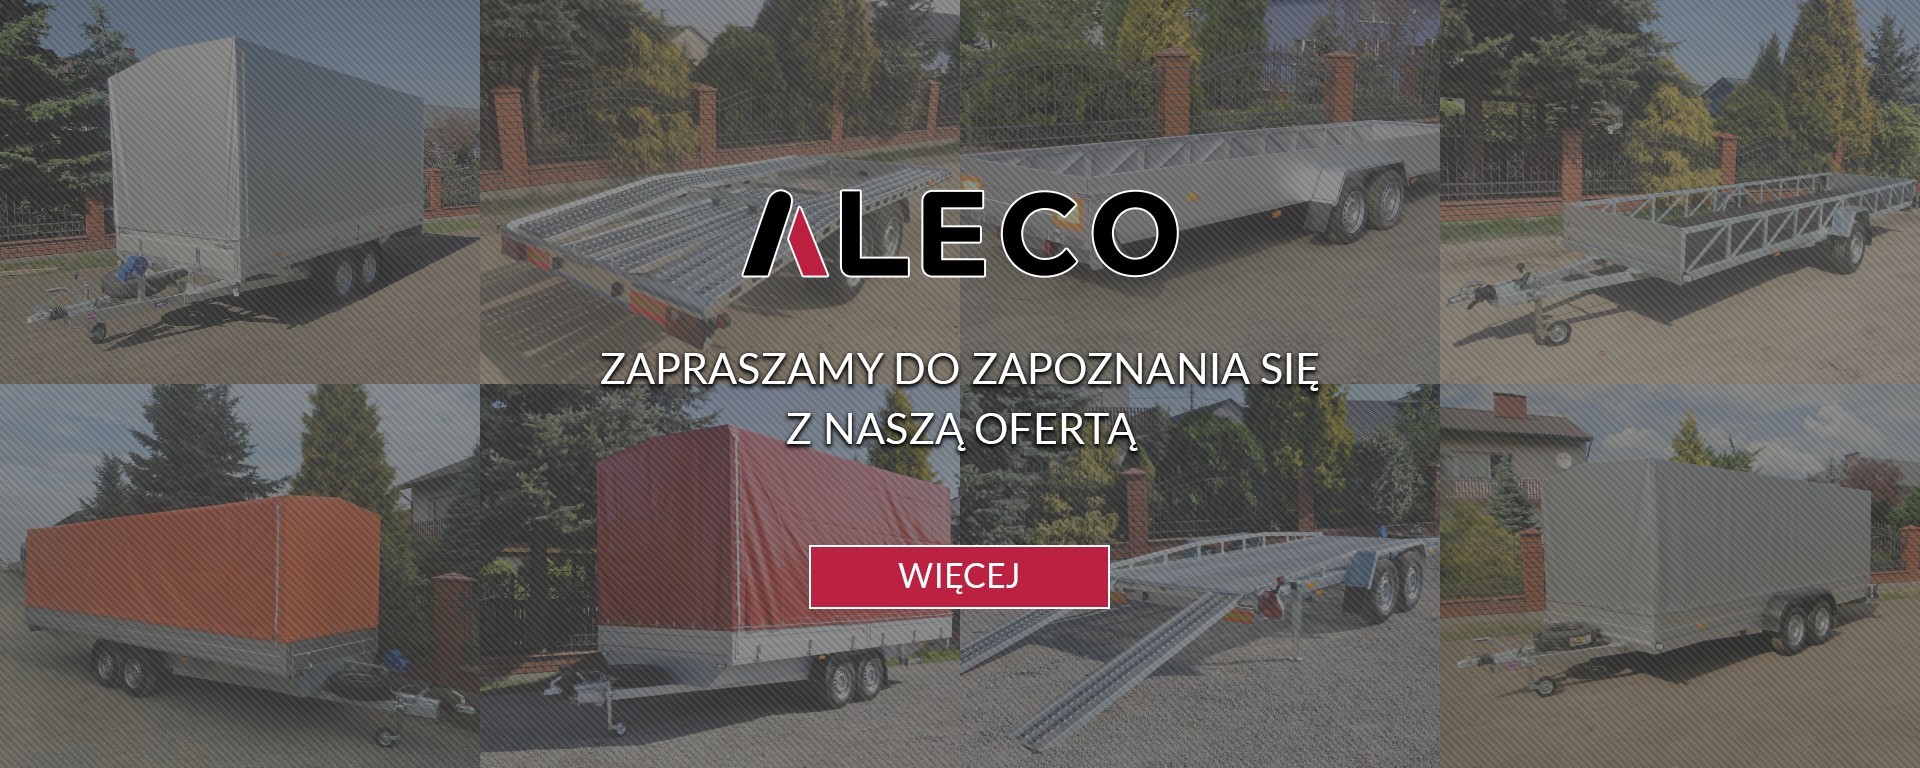 ALECO - sprzedaż i wynajem przyczep